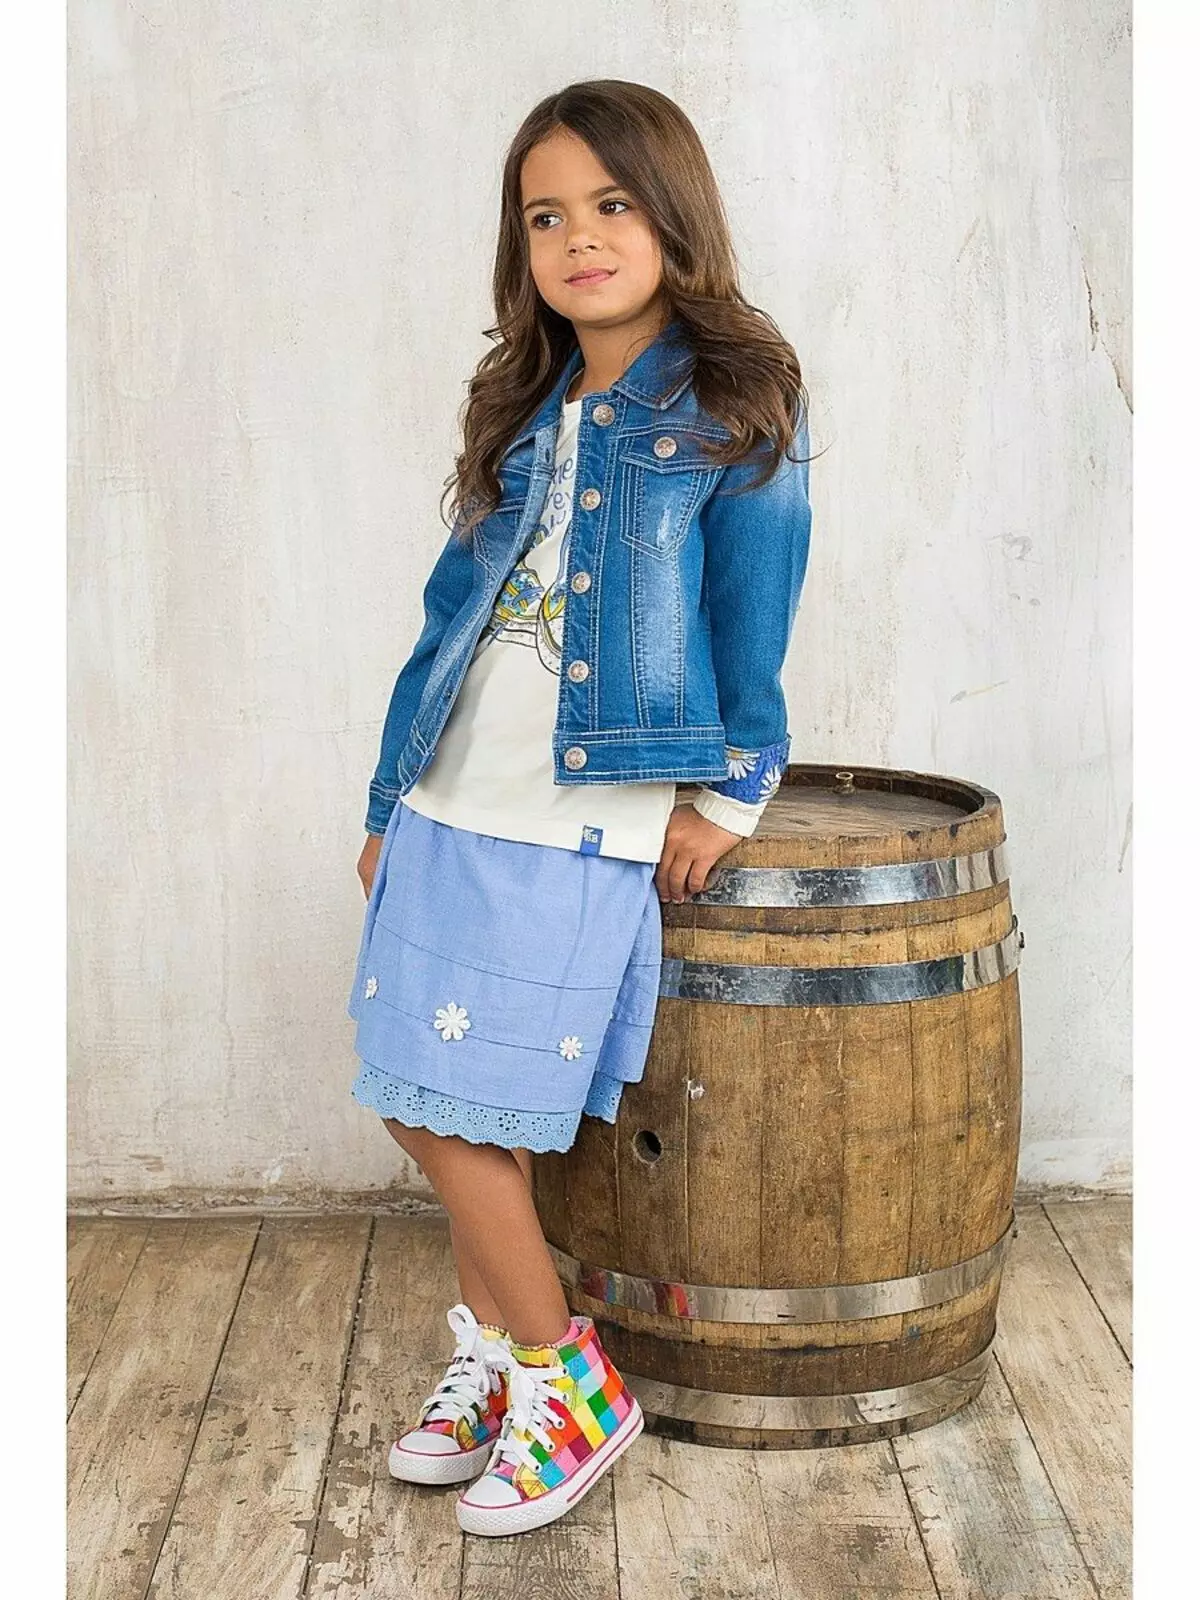 Vaikų džinsinis striukė mergaitei (49) Nuotrauka: ką dėvėti, modelius iš senų džinsų 14394_26